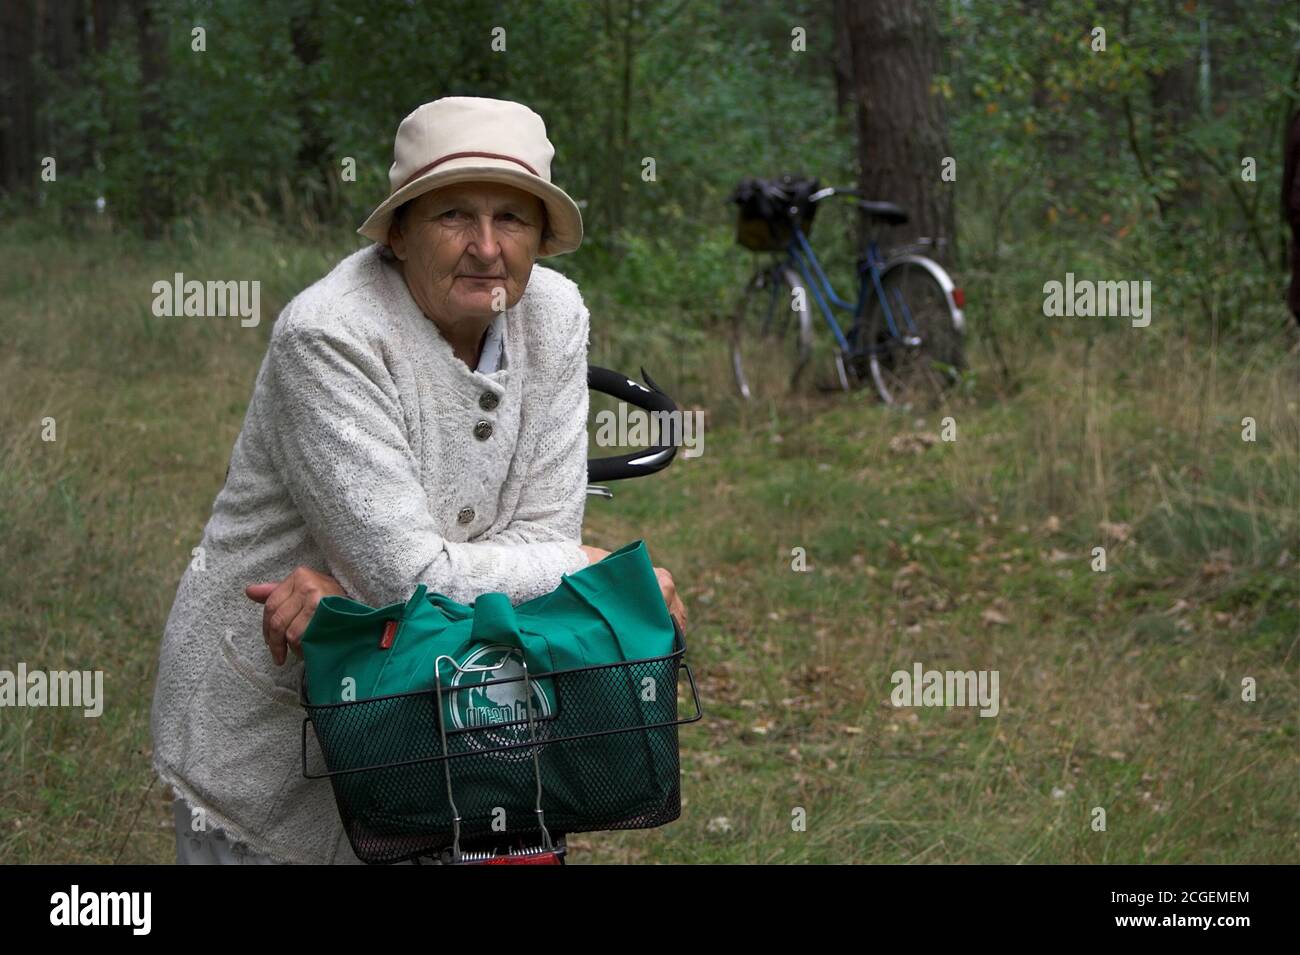 Une vieille dame dans un chapeau lors d'une randonnée dans les bois, s'appuyant contre son vélo. Eine alte Dame mit Hut, die im Wald wandert und sich an ihr Fahrrad lehnt. Banque D'Images